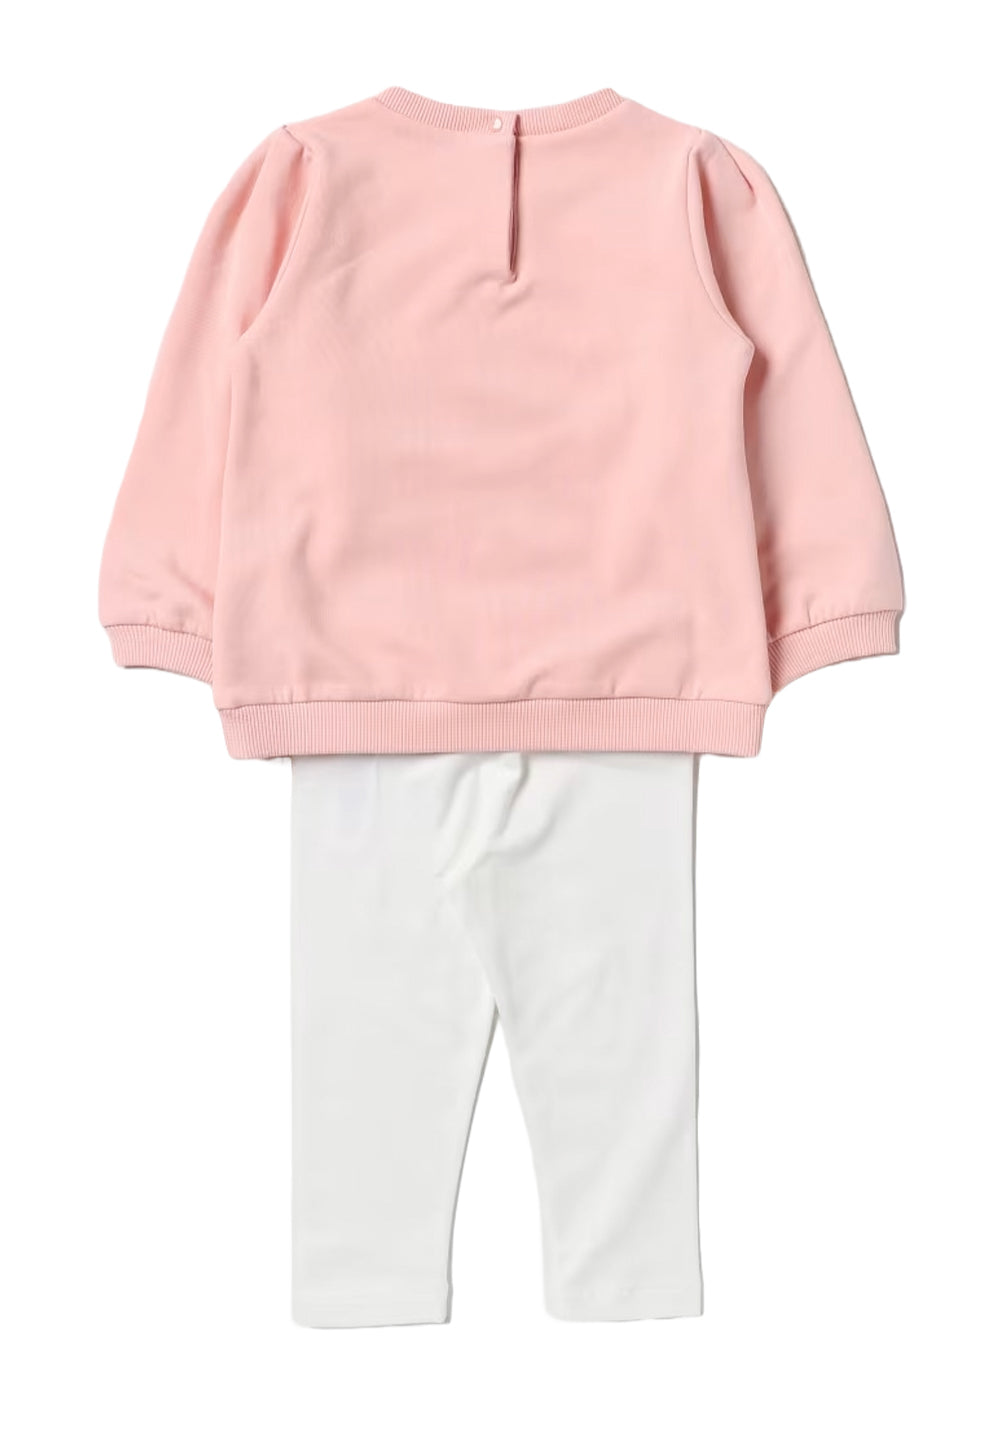 Rosa-weißes Outfit für Baby-Mädchen